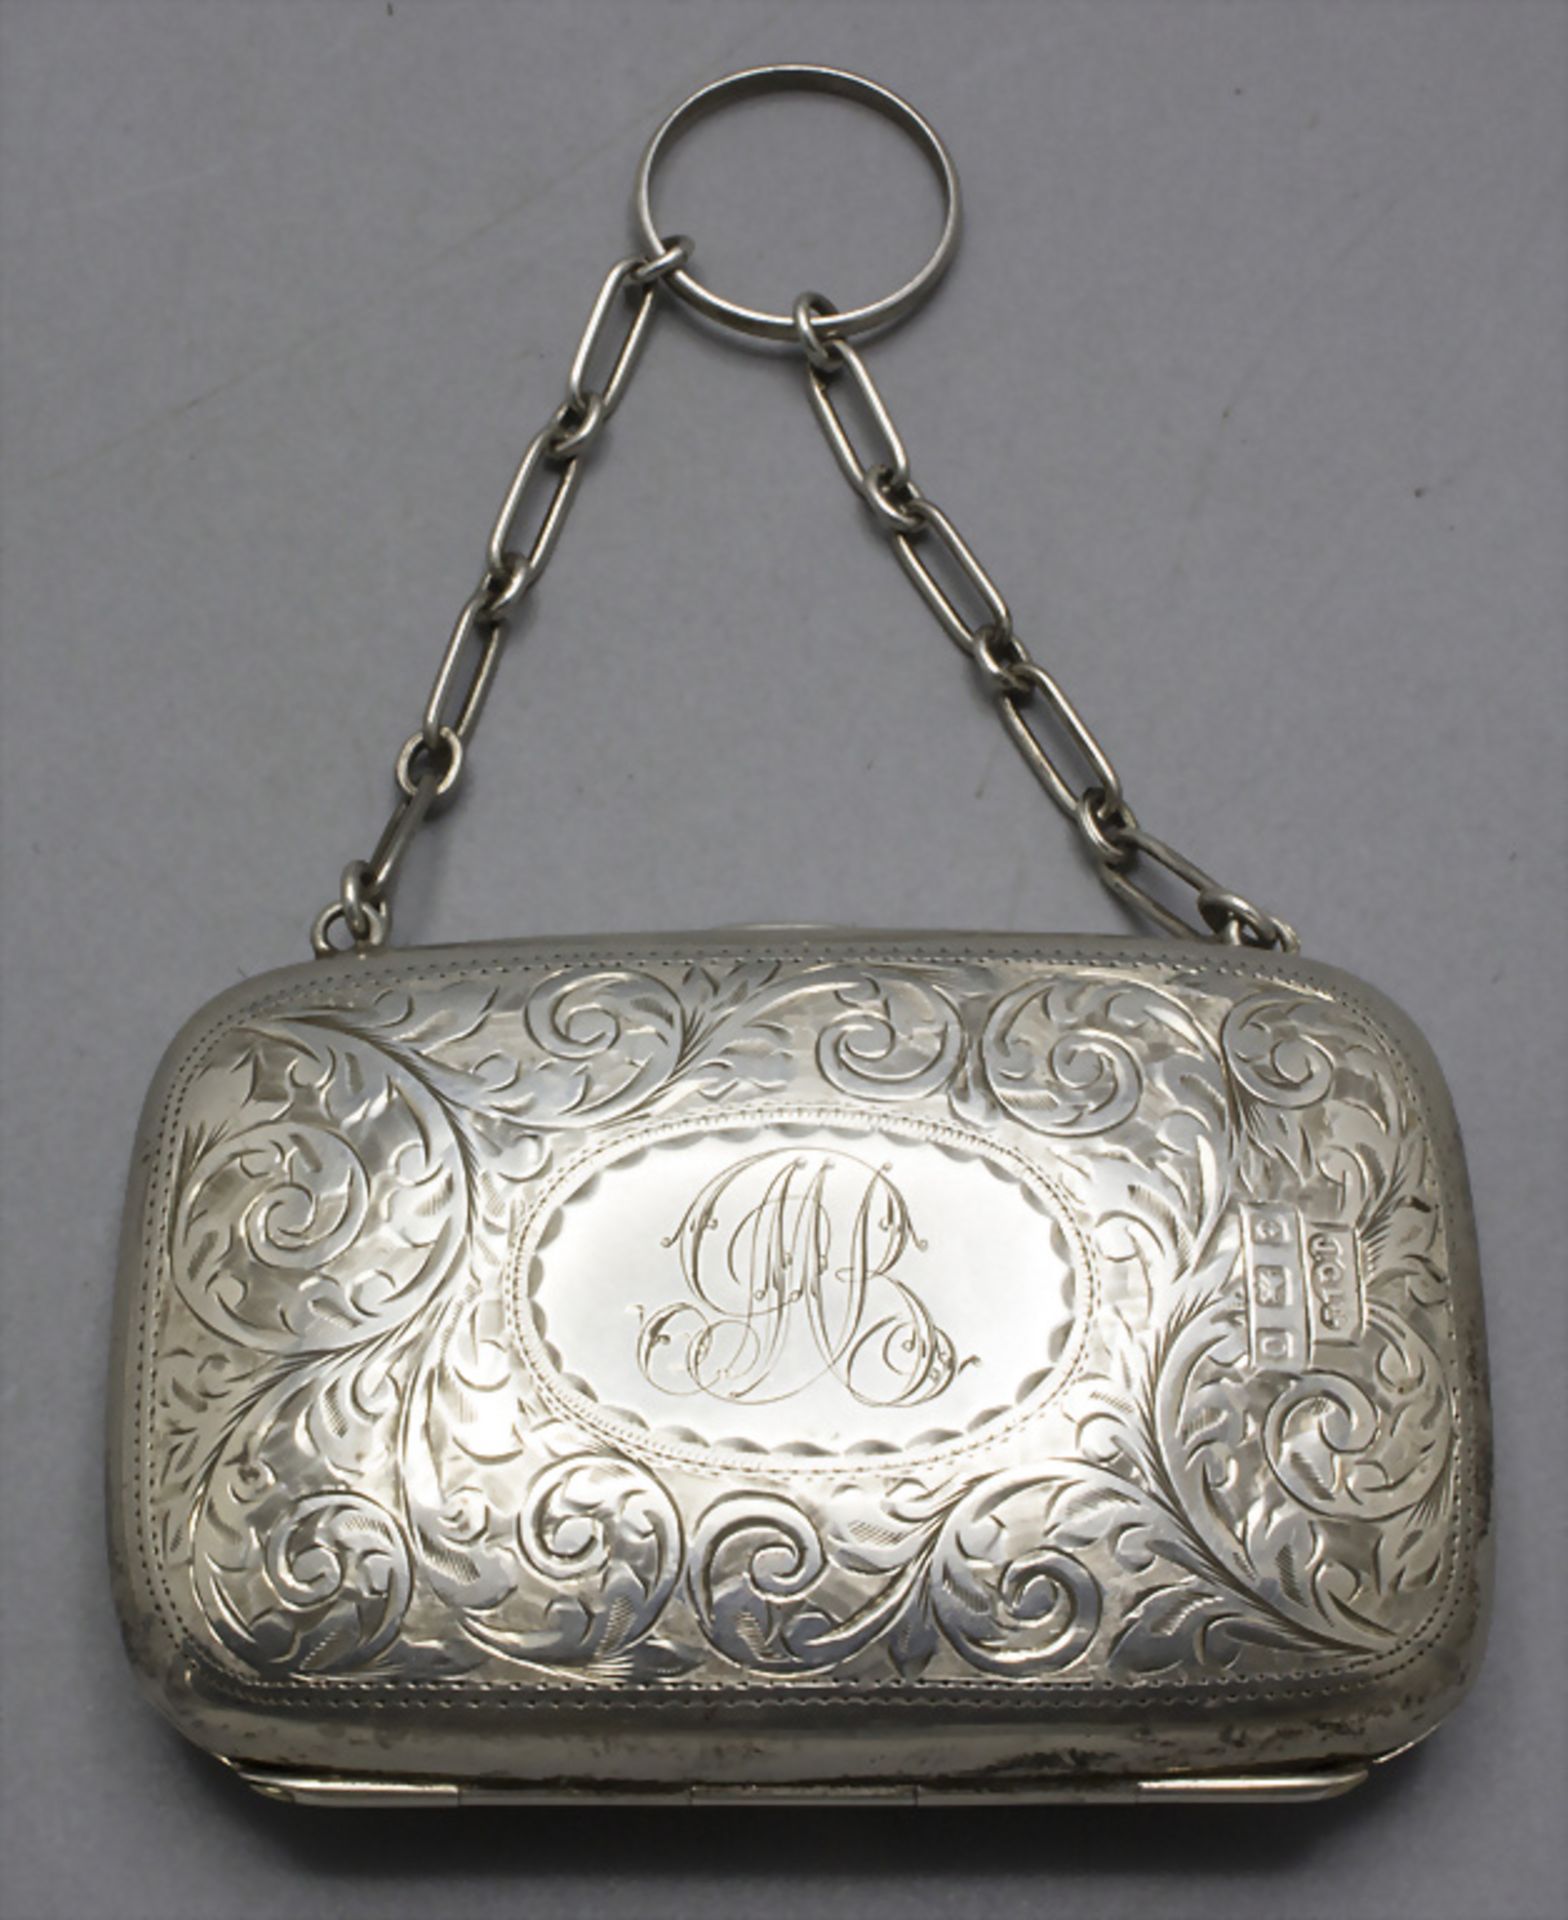 Silber Täschchen/Portemonnaie / A silver purse/wallet, J. Gloster Ltd., Birmingham, 1913